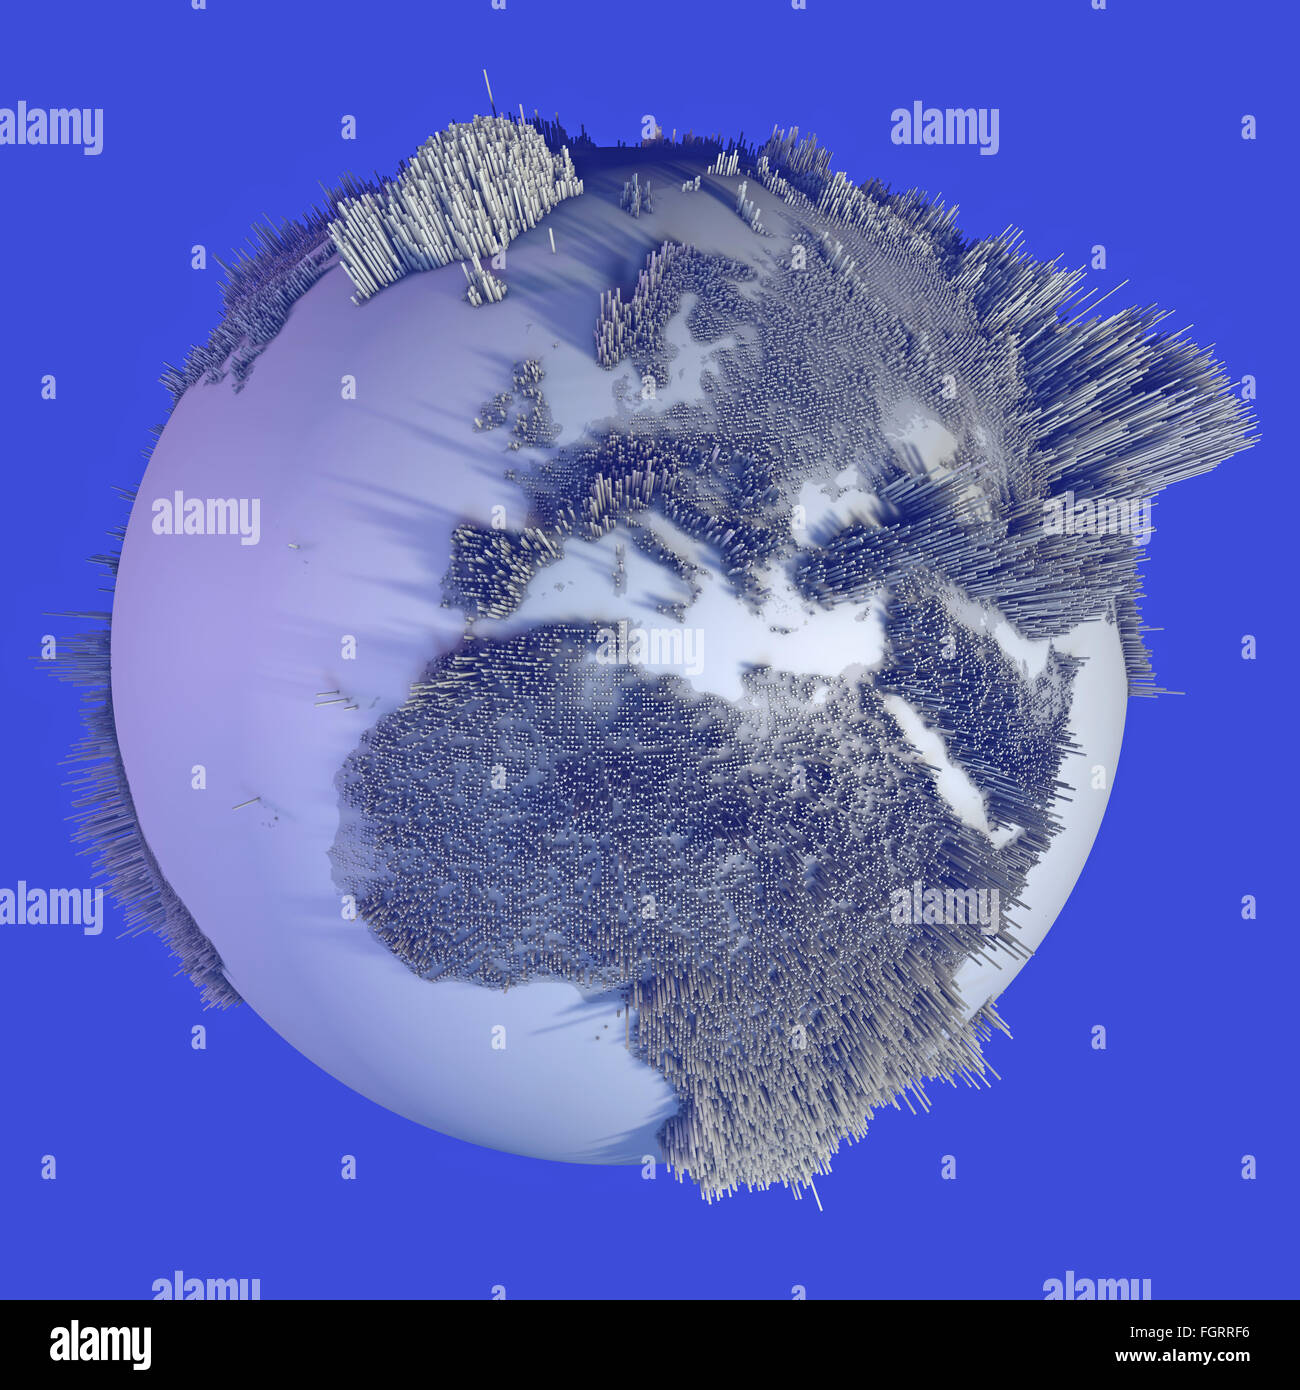 Abstract world globe, carte des hauteurs, des histogrammes Banque D'Images